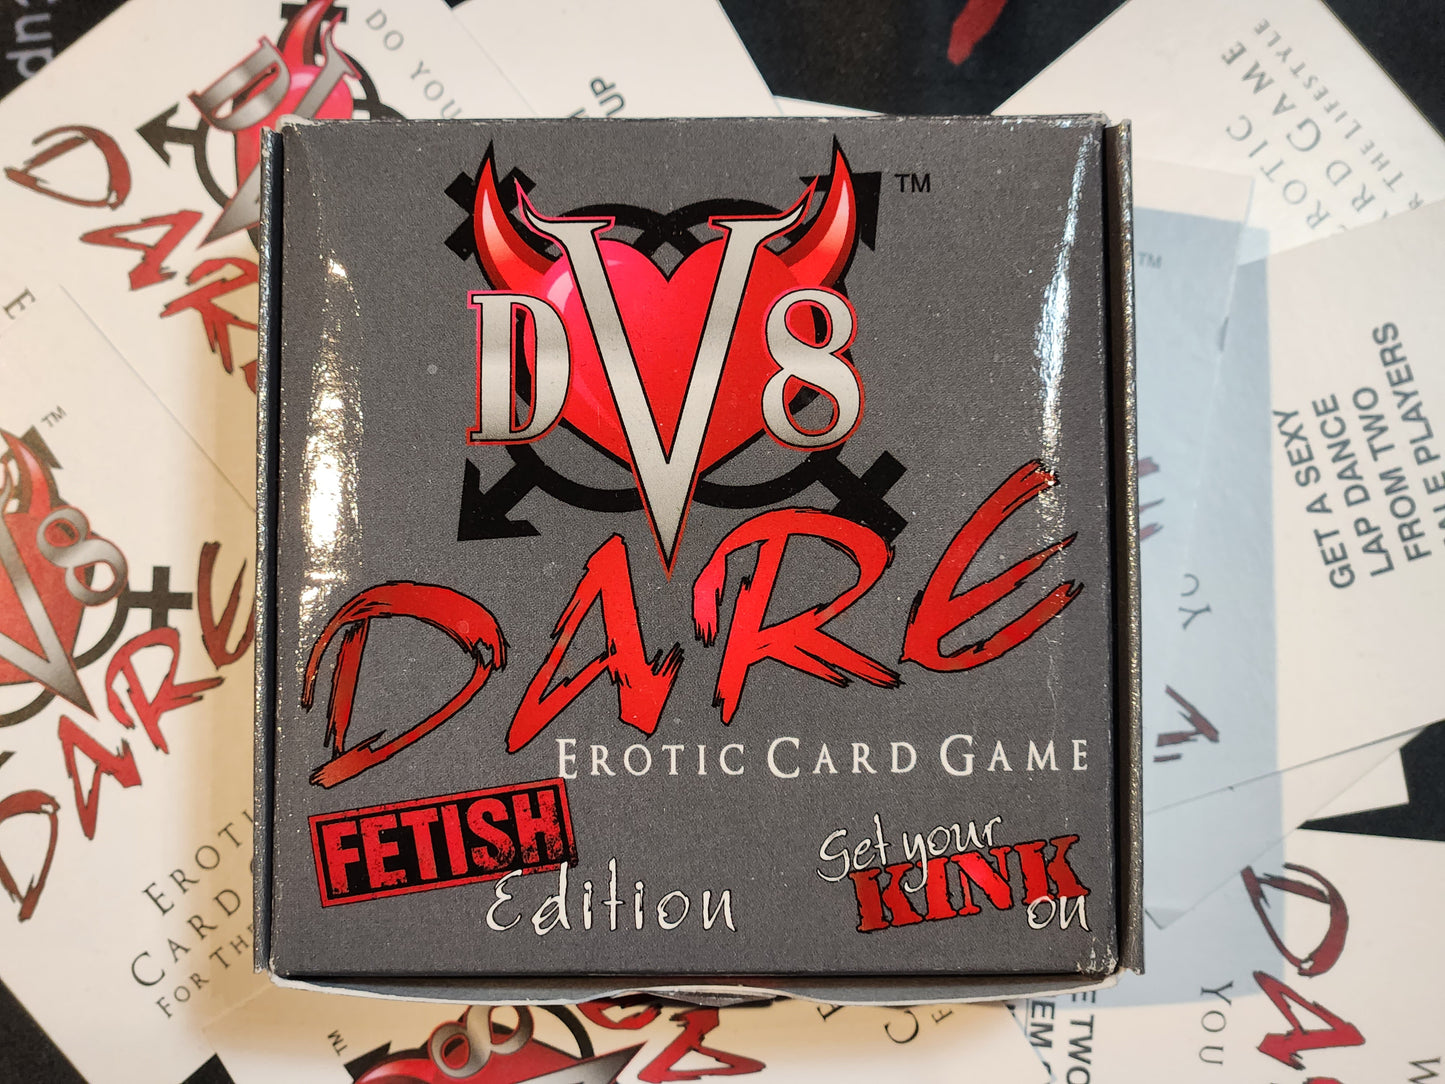 DV8 Card Kink Card Game